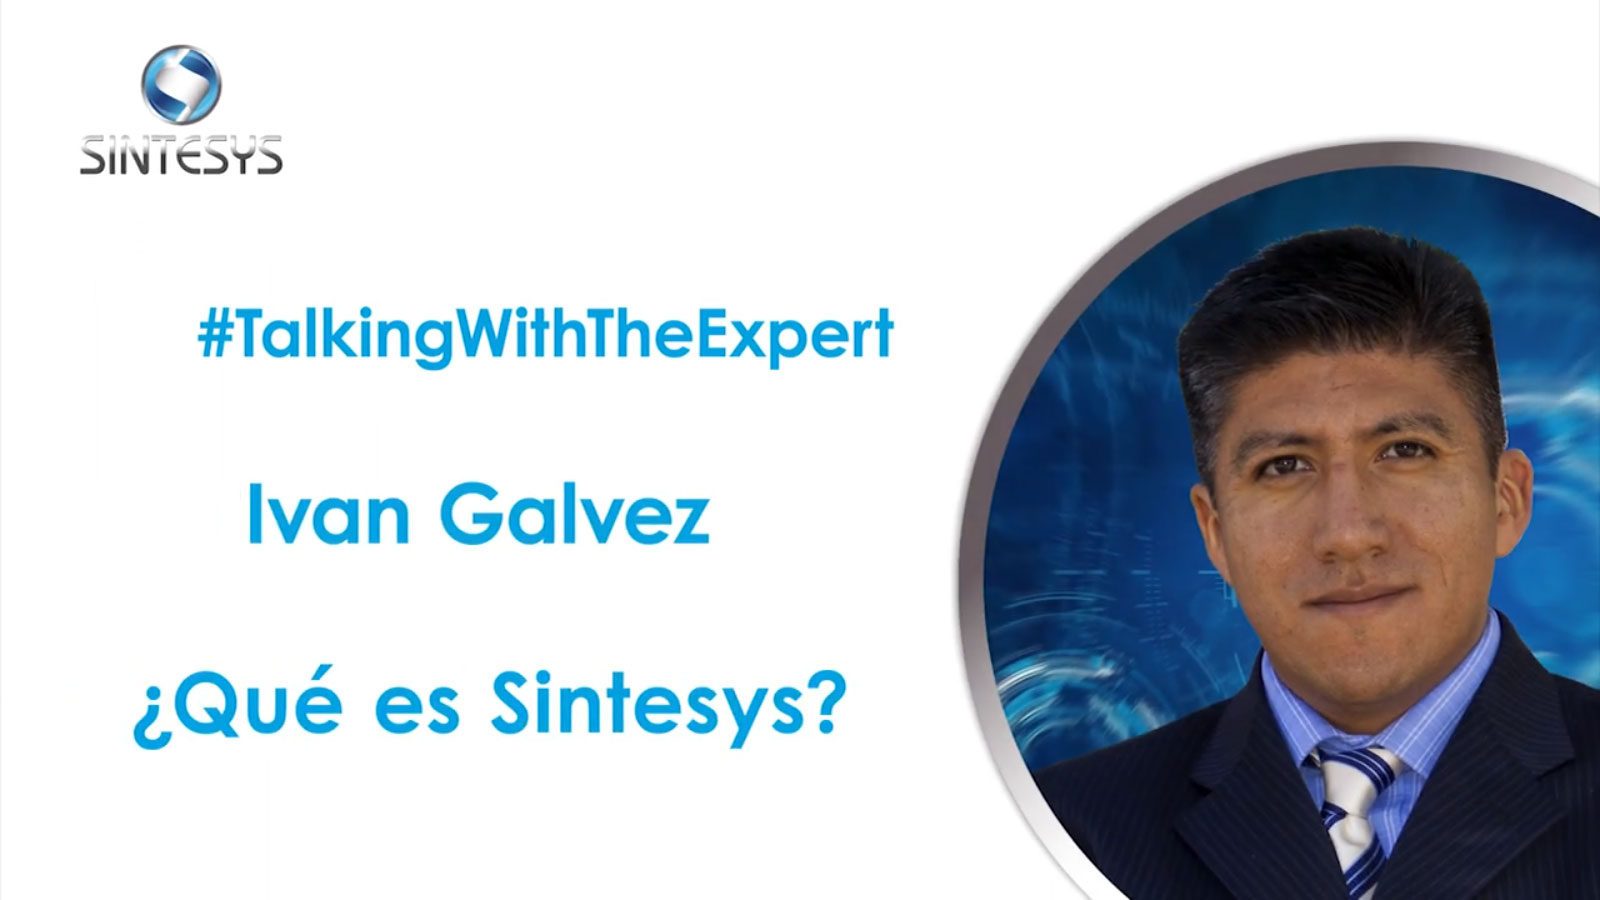 Talking with the Expert: Ivan Galvez (imagen 1)